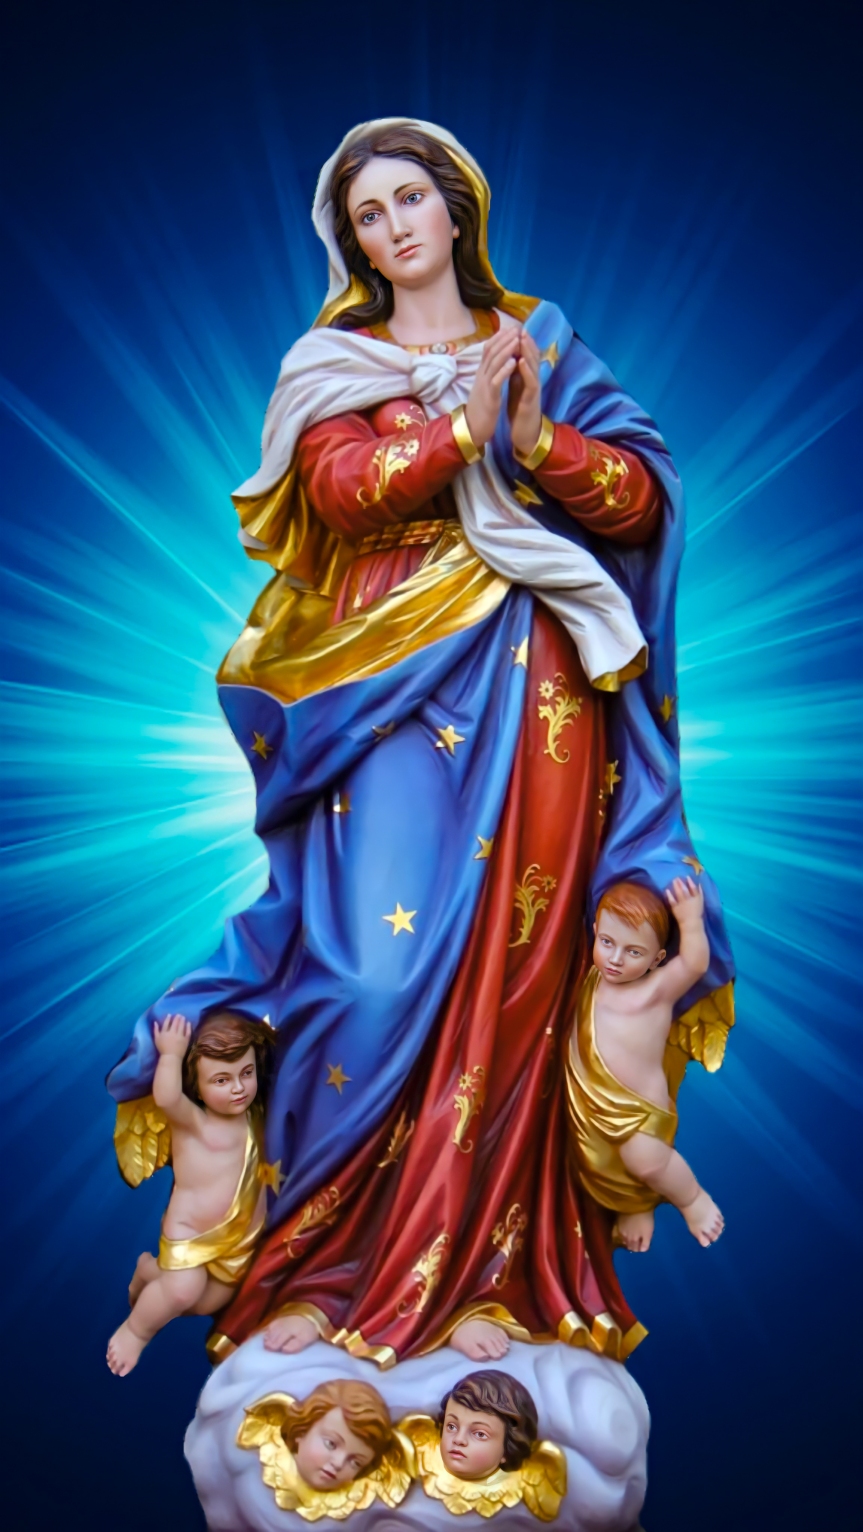 The Assumption of Saint Mary / സ്വർഗ്ഗാരോപിത മാതാവിൻെറ ഹൃദയസ്പർശിയായ തിരുന്നാൾ സന്ദേശം